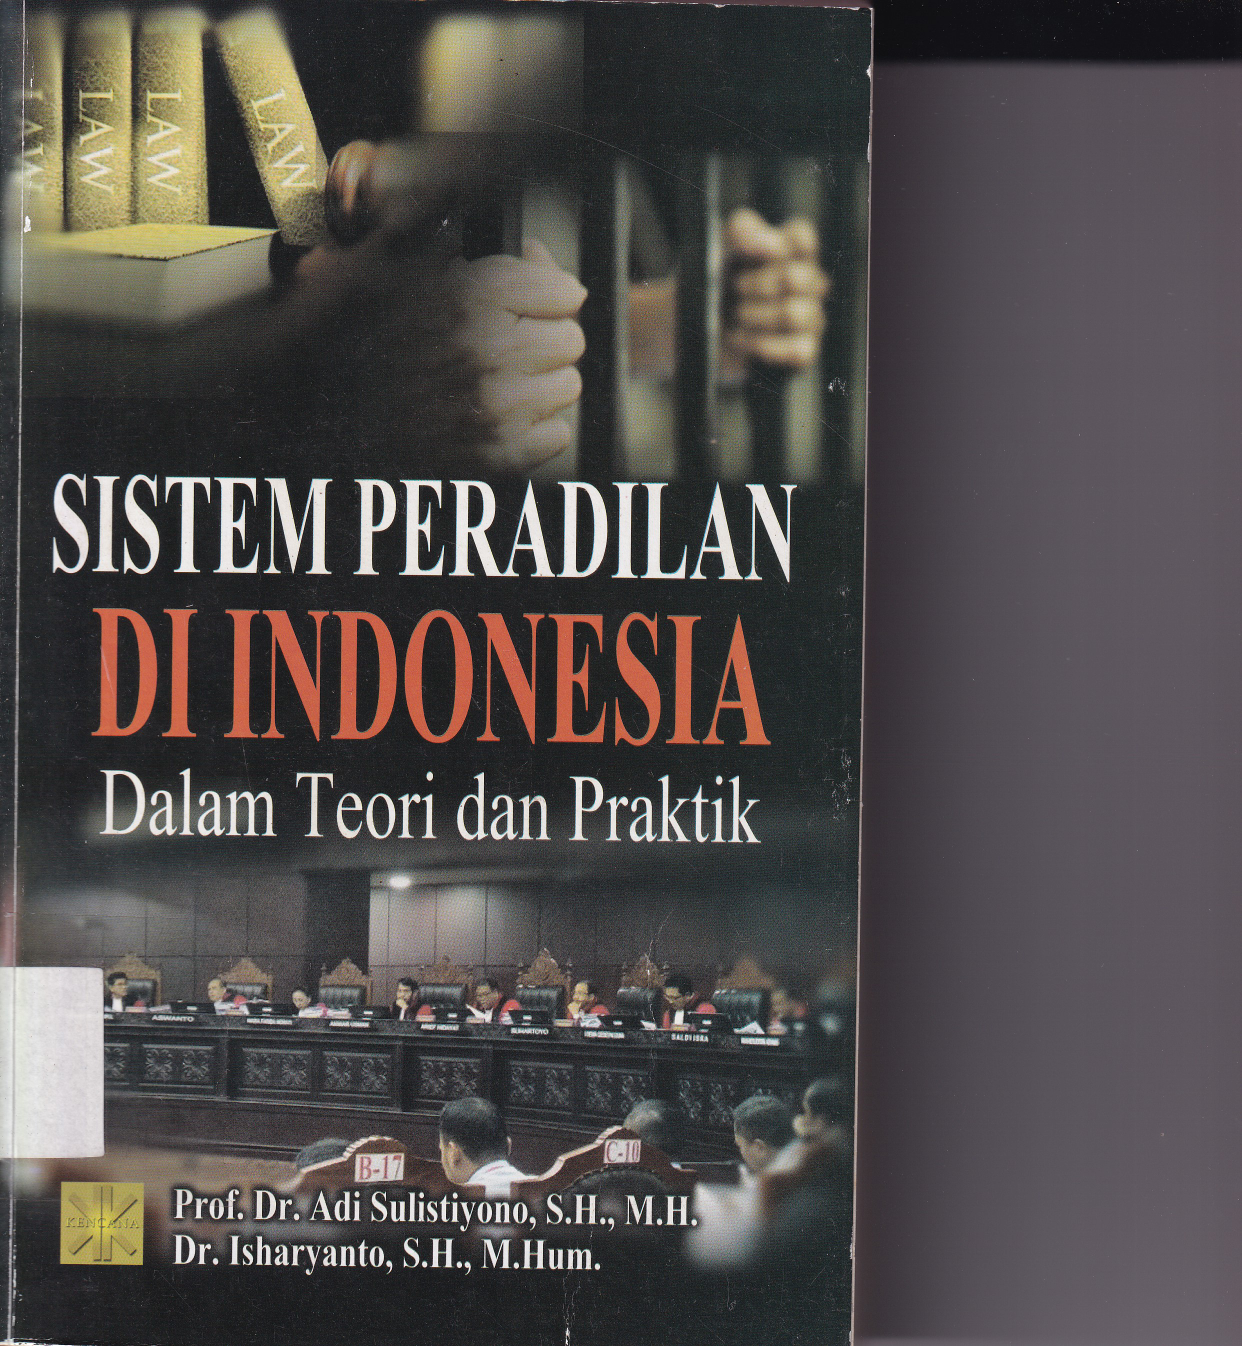 Sistem Peradilan di Indonesia Dalam Teori dan Praktik (Ed.1,Cet.1)